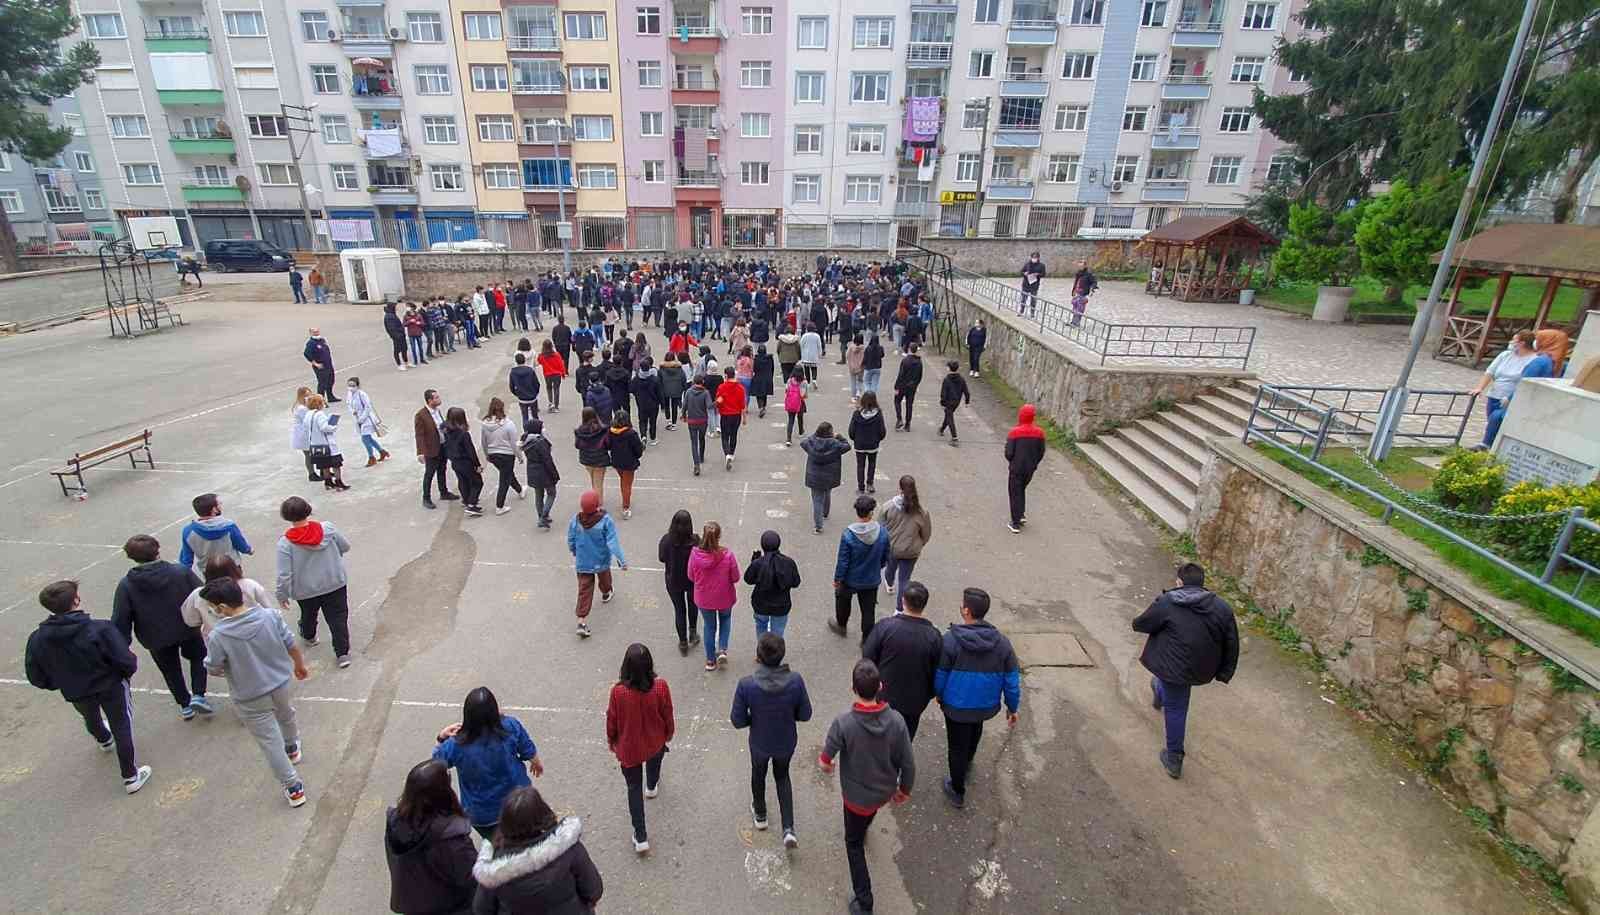 Giresun Belediyesi, öğrencilerle yangın tatbikatı gerçekleştirdi #giresun